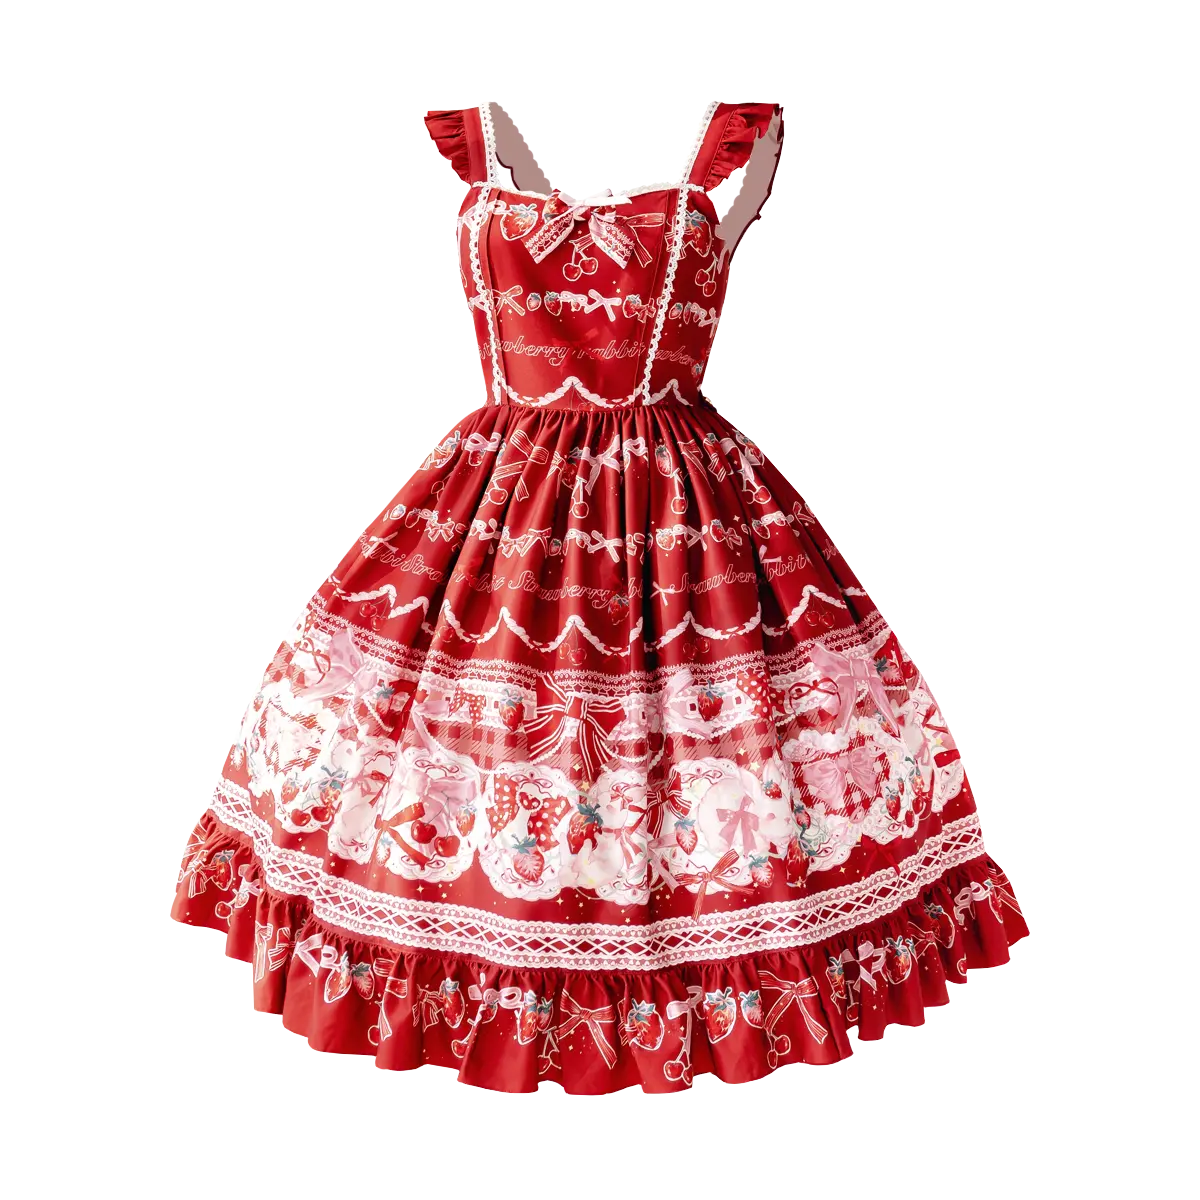 Komplettsatz von guter Qualität süßer einfacher Skater ärmelloser Rock Lolita-Kleid